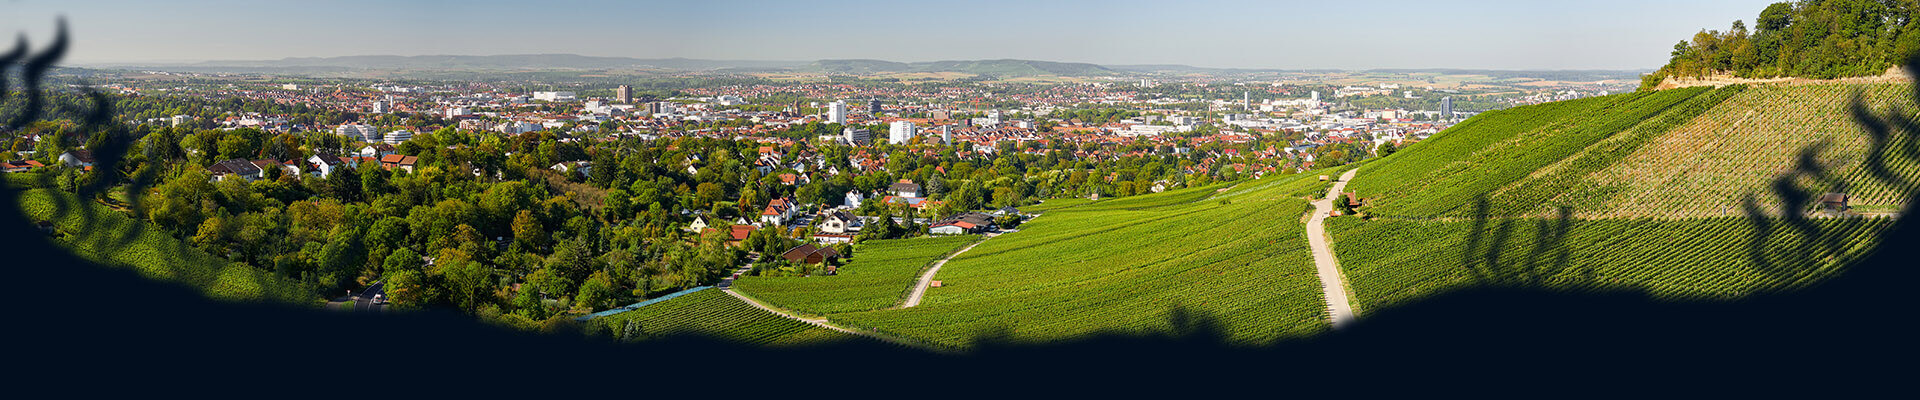 Kopfgrafik mit Blick auf Heilbronn